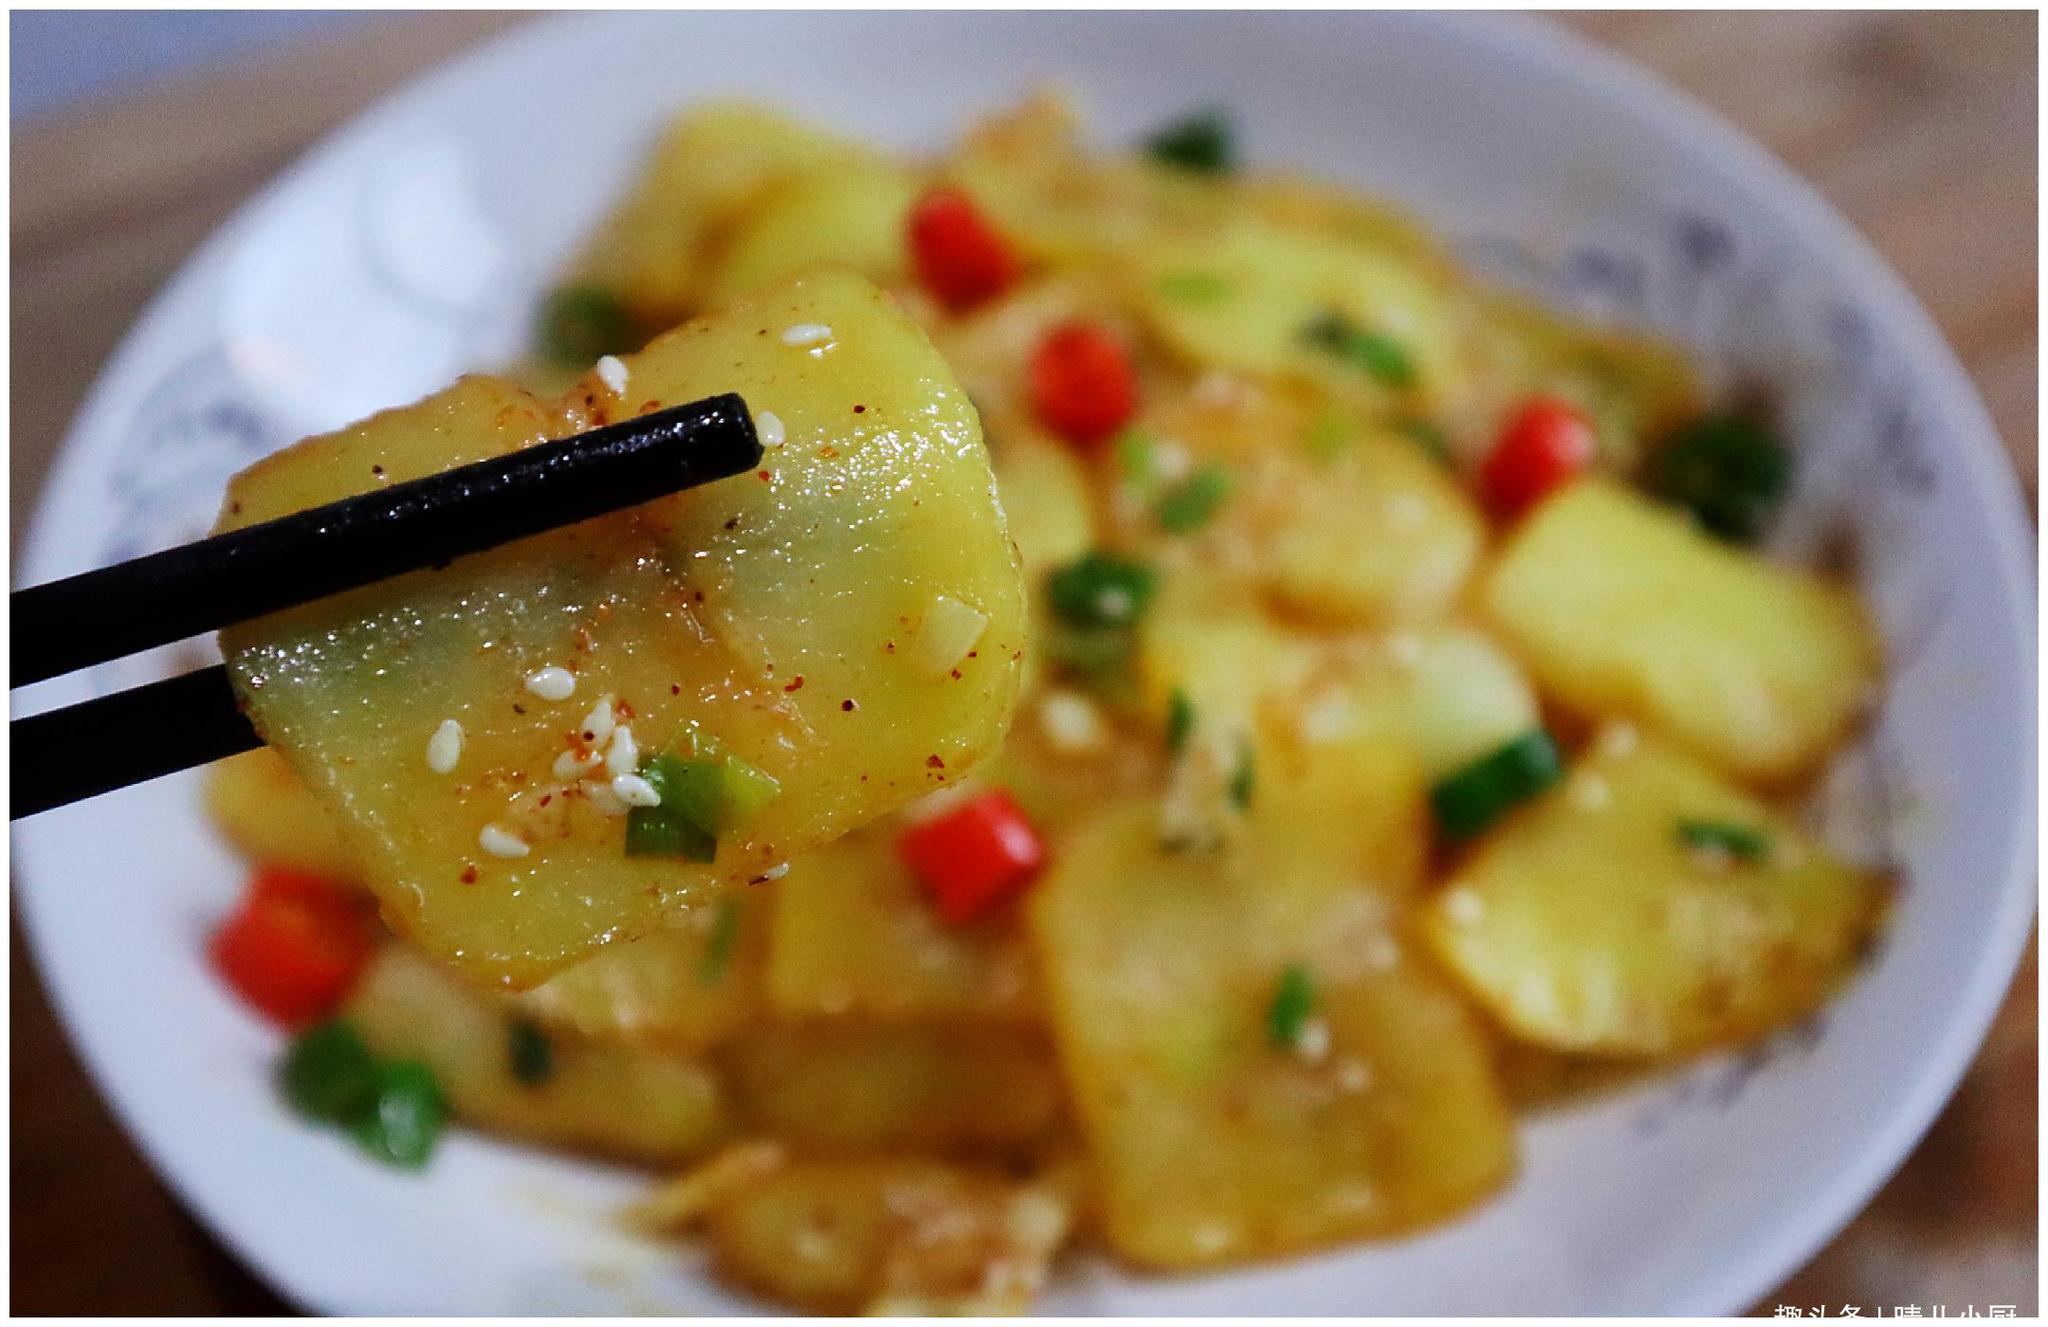 这种金黄酥脆的香辣土豆片、做法简单又好学、香辣入味还好吃 - 哔哩哔哩